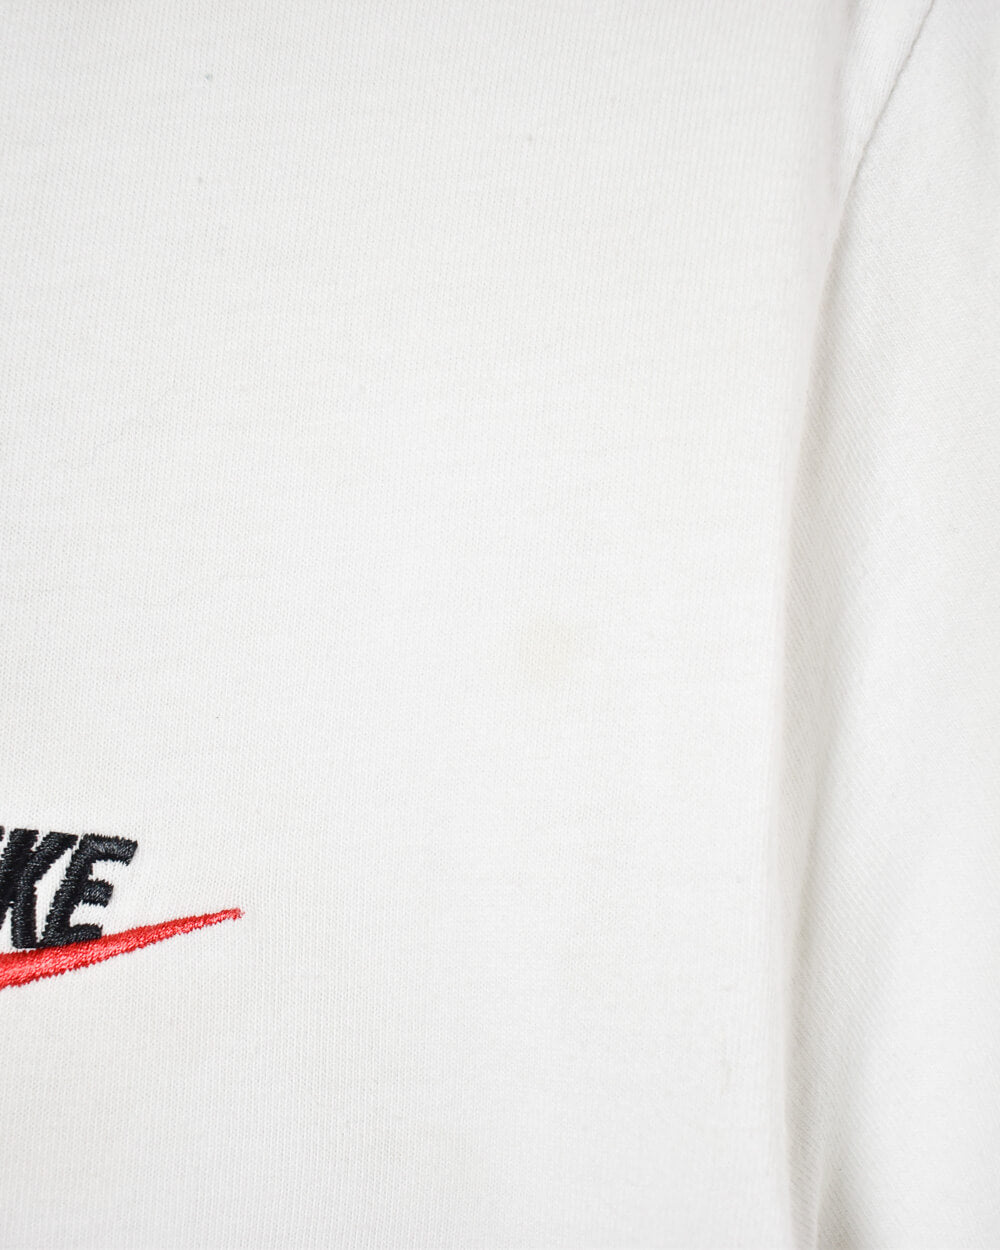 White Nike T-Shirt - Medium